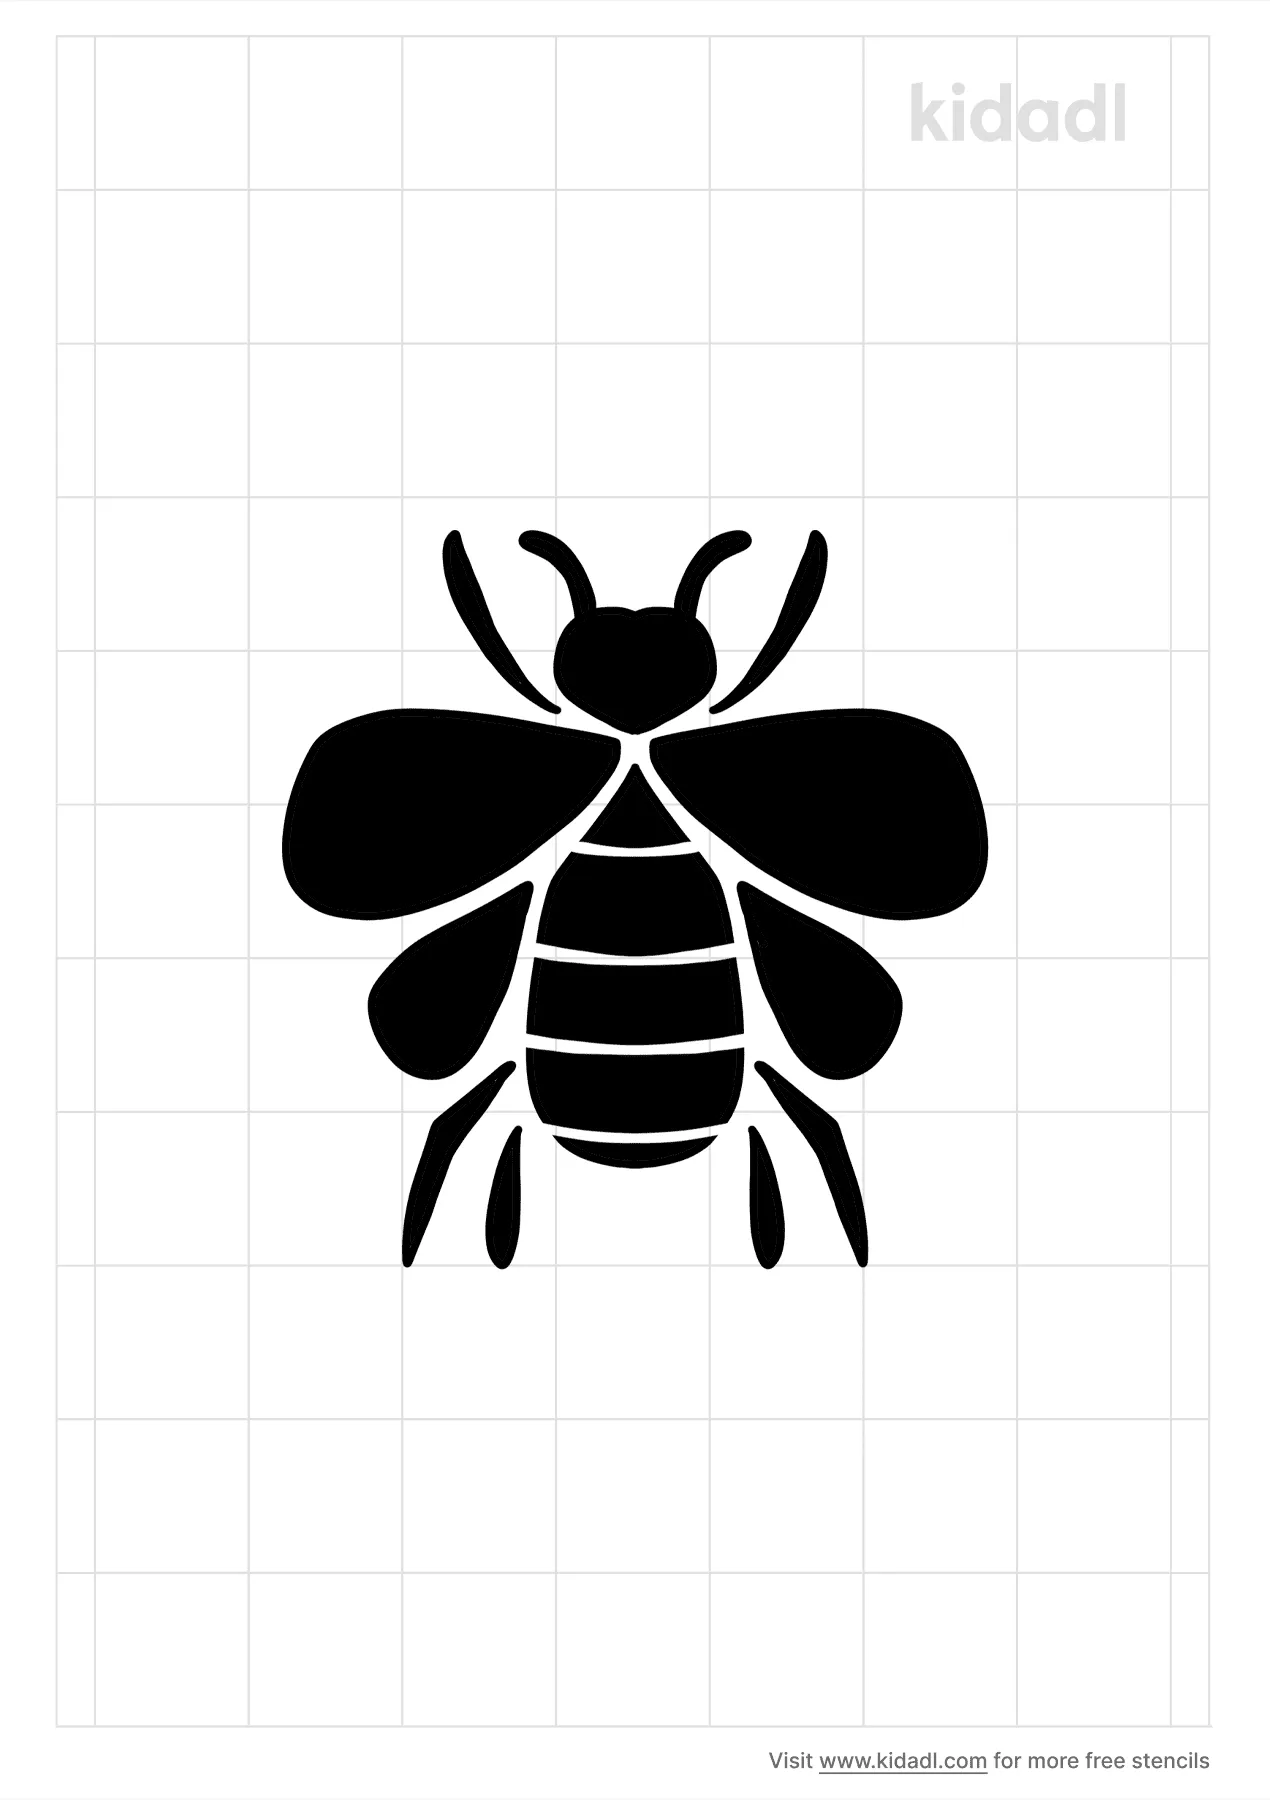 Honey Bee Stencils Free Printable Bugs Stencils Kidadl And Bugs Stencils Free Printable Stencils Kidadl